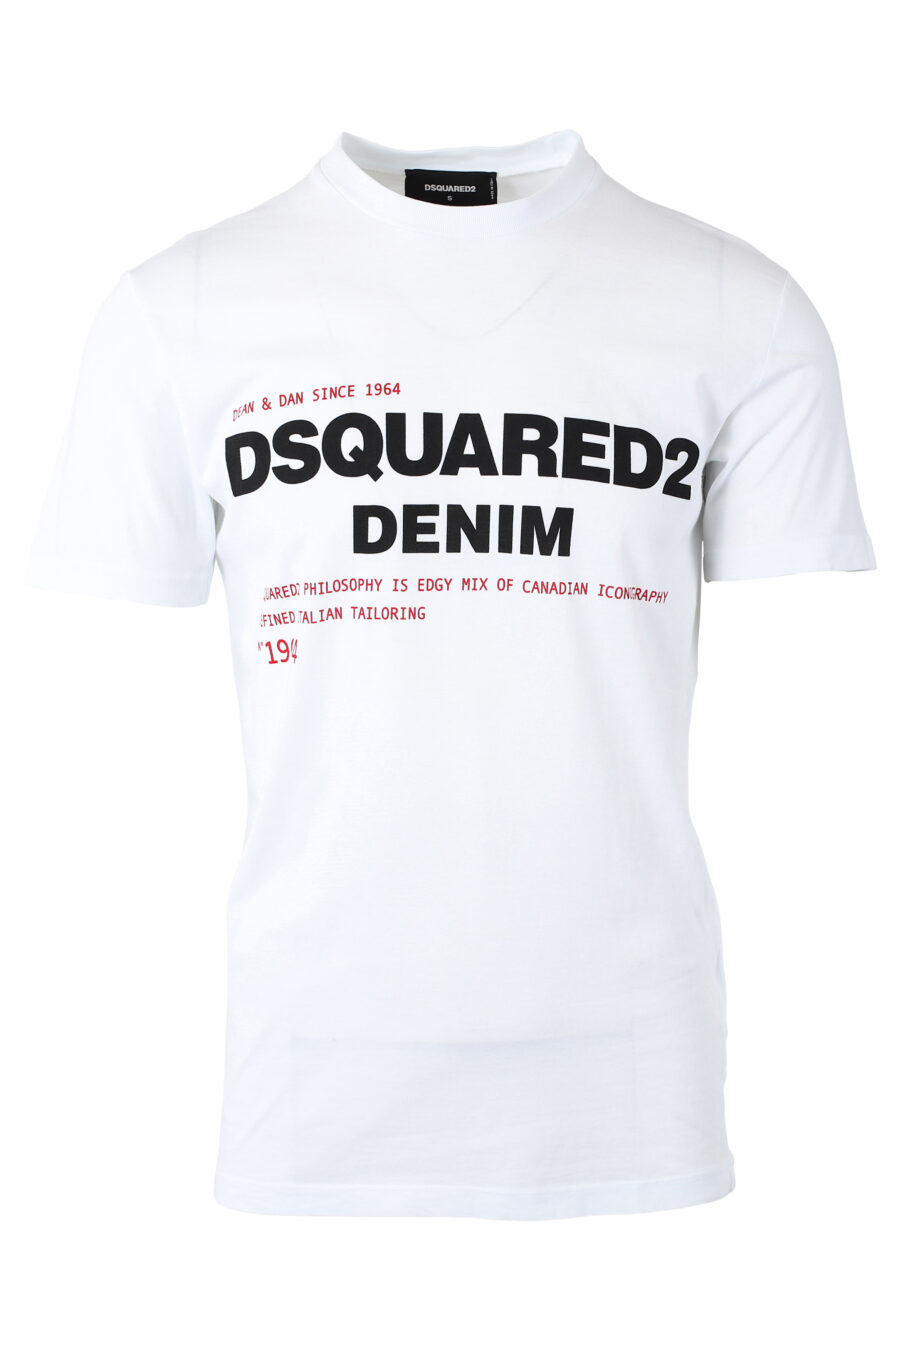 Camiseta blanca con maxilogo "denim" - IMG 1154